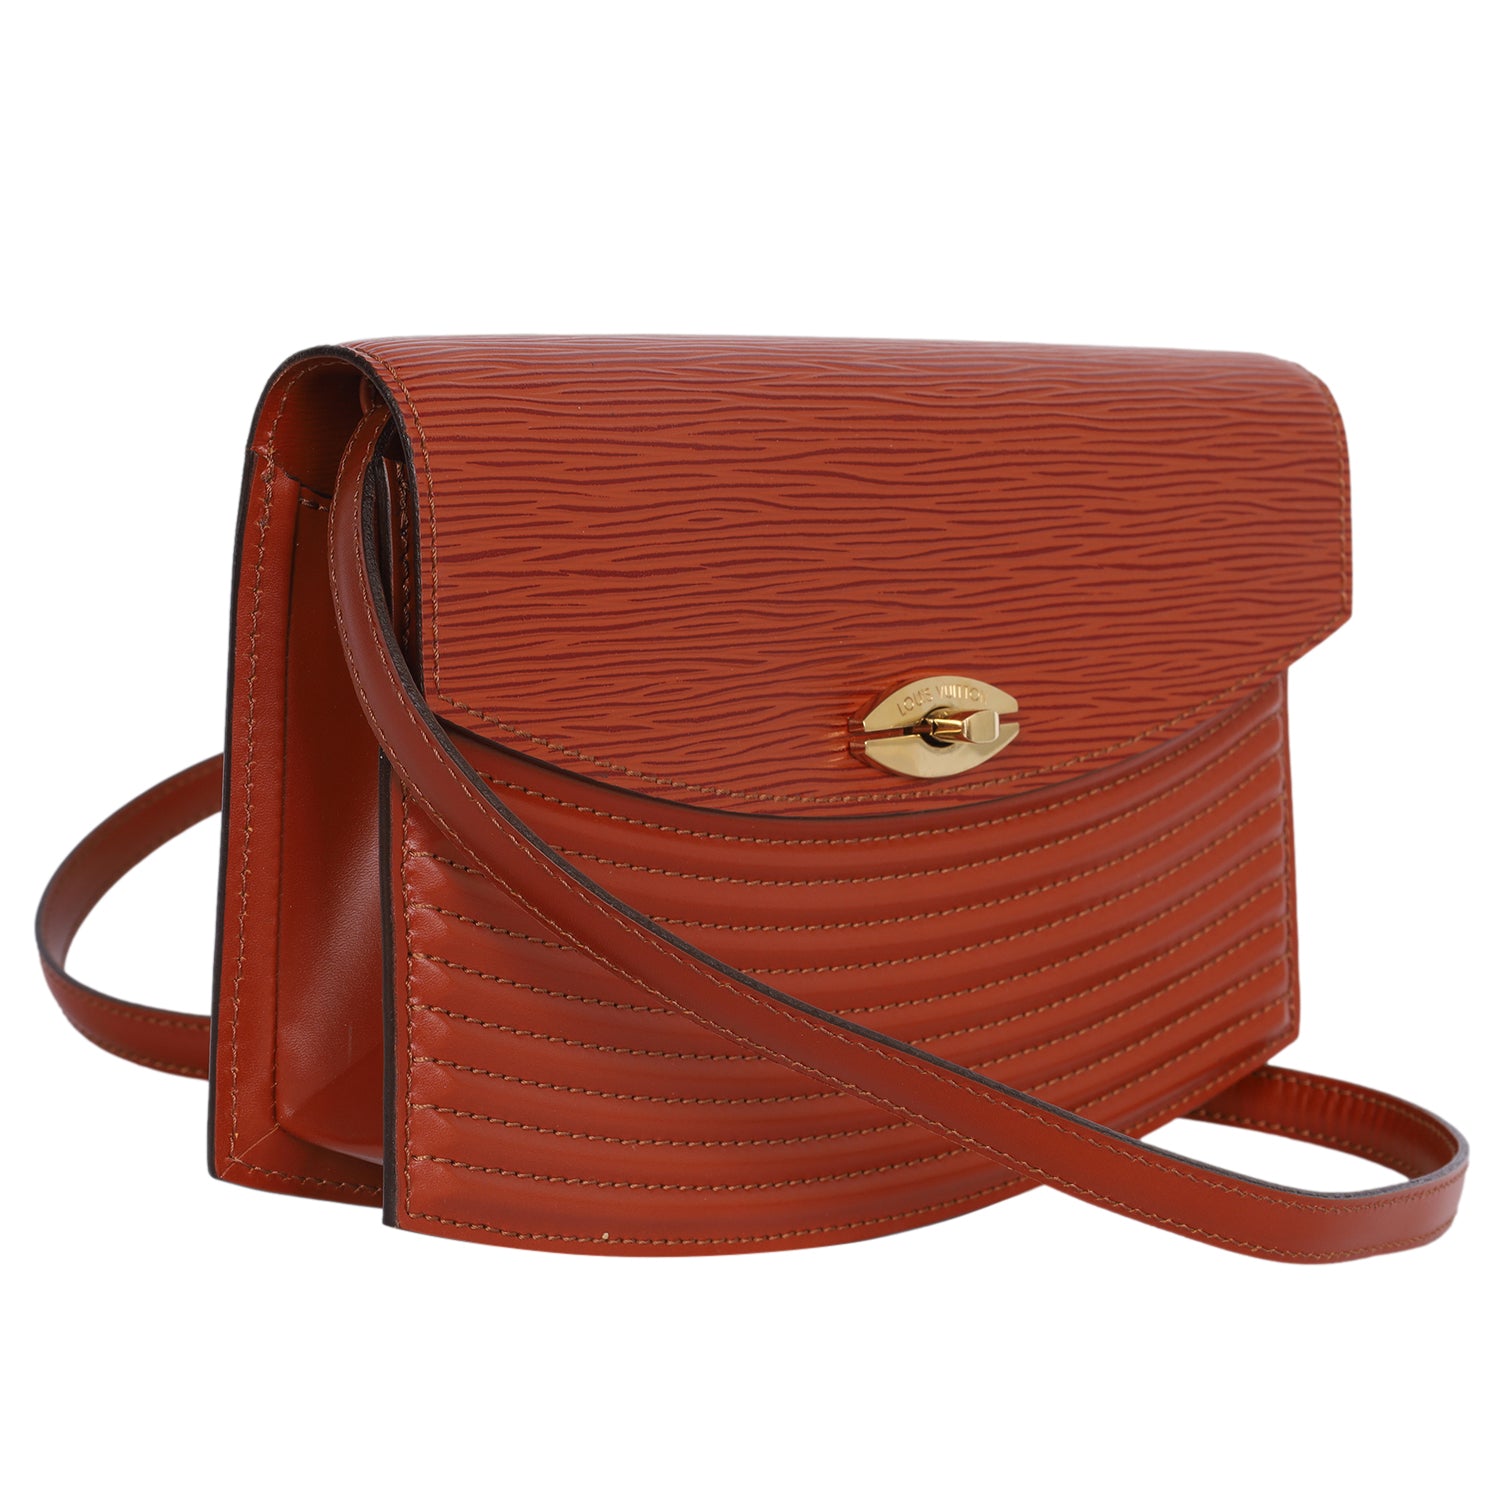 Louis Vuitton Brown Travel Bag, Tradesy